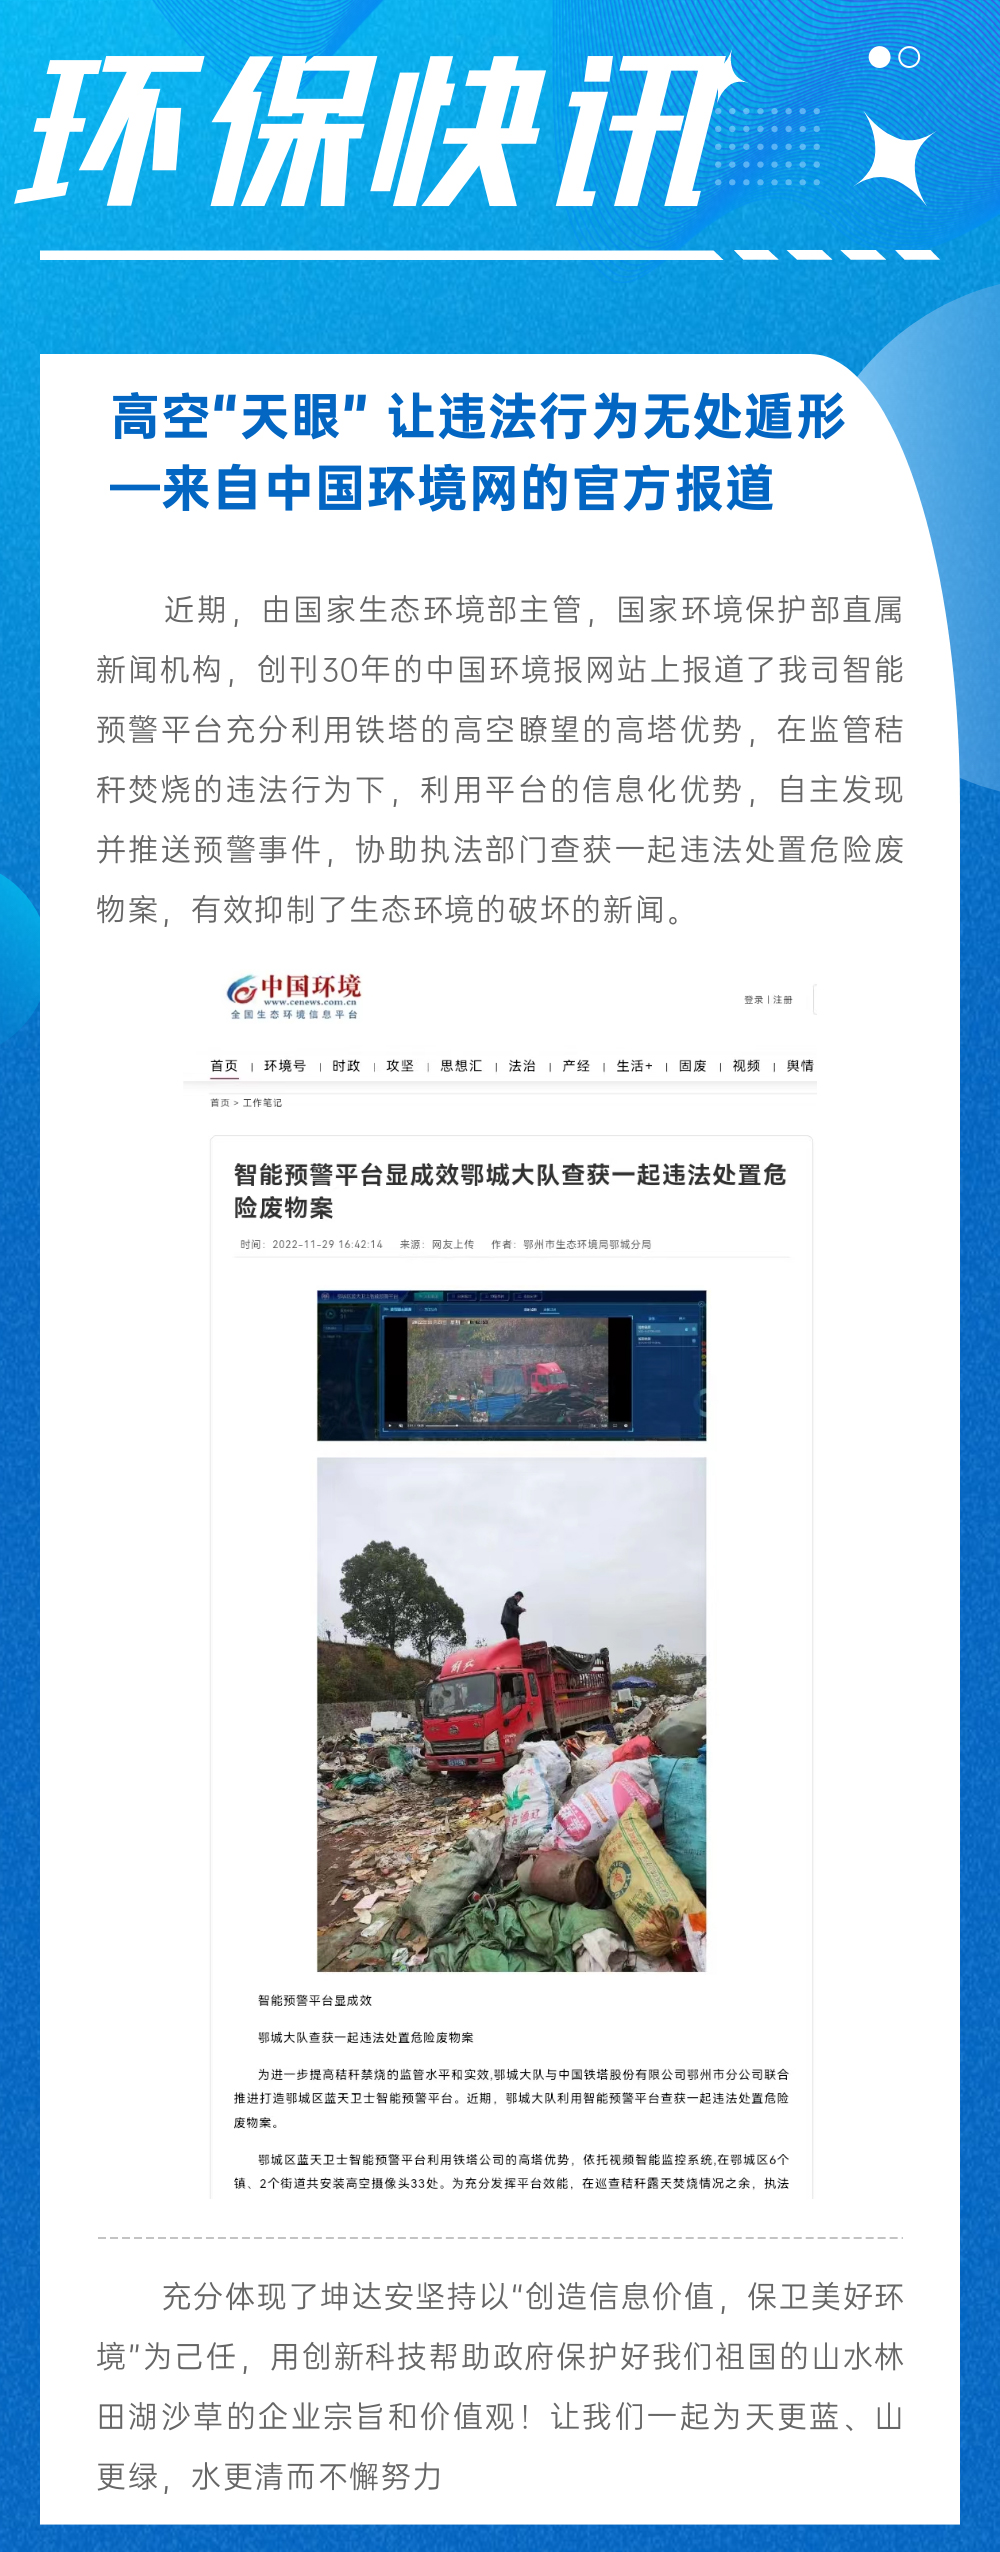 快讯 | 高空“天眼” 让违法行为无处遁形—来自中国环境网的官方报道